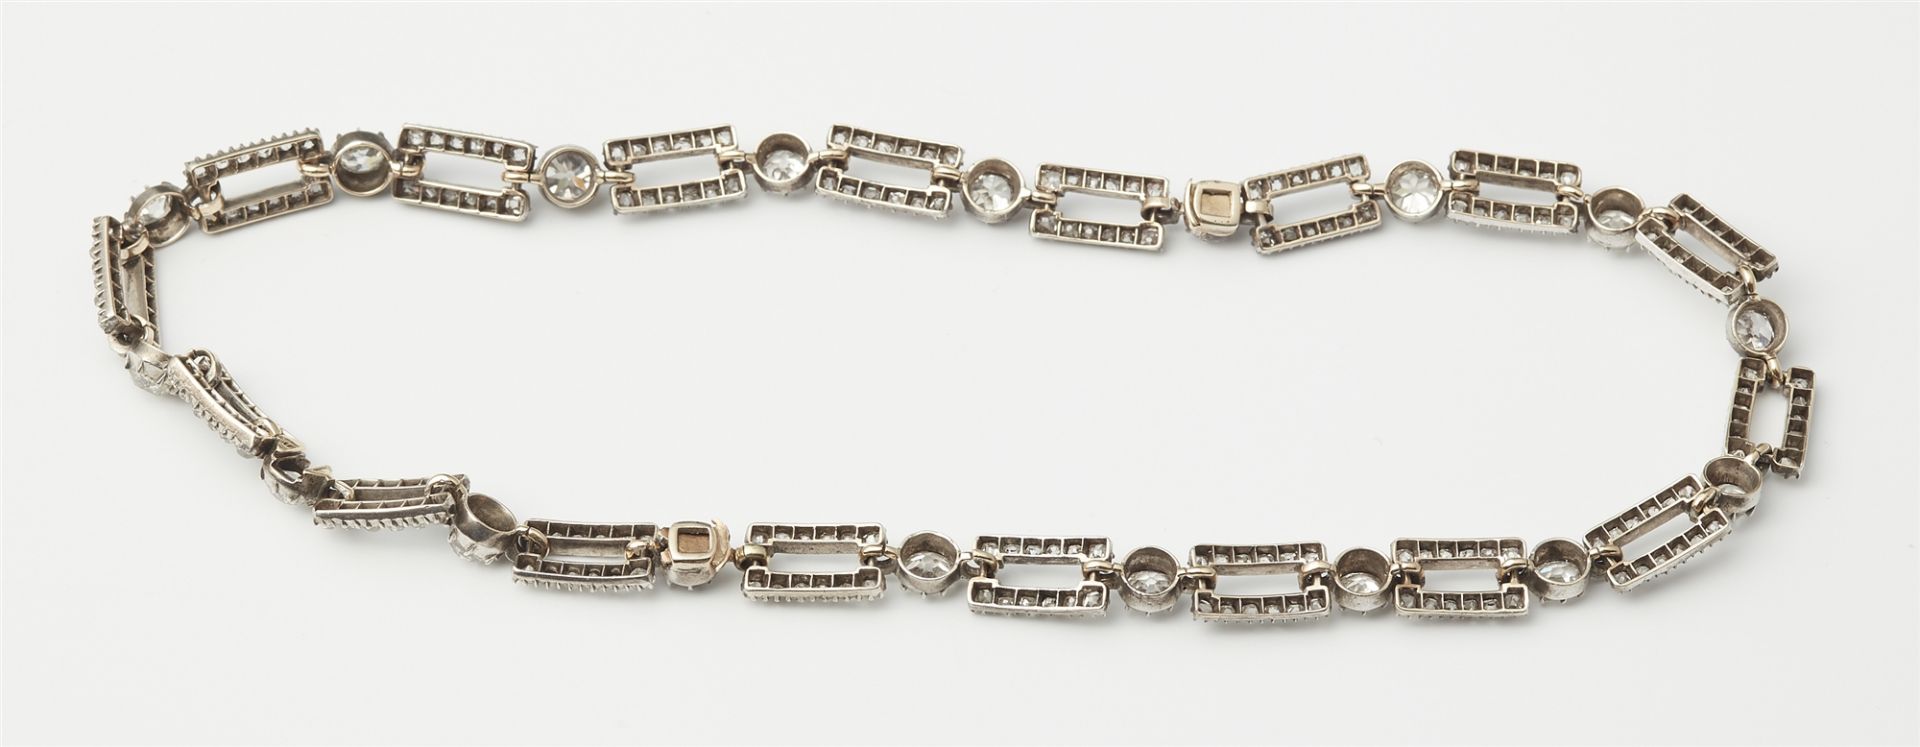 Collier/Paar Armbänder mit Diamanten - Bild 3 aus 3